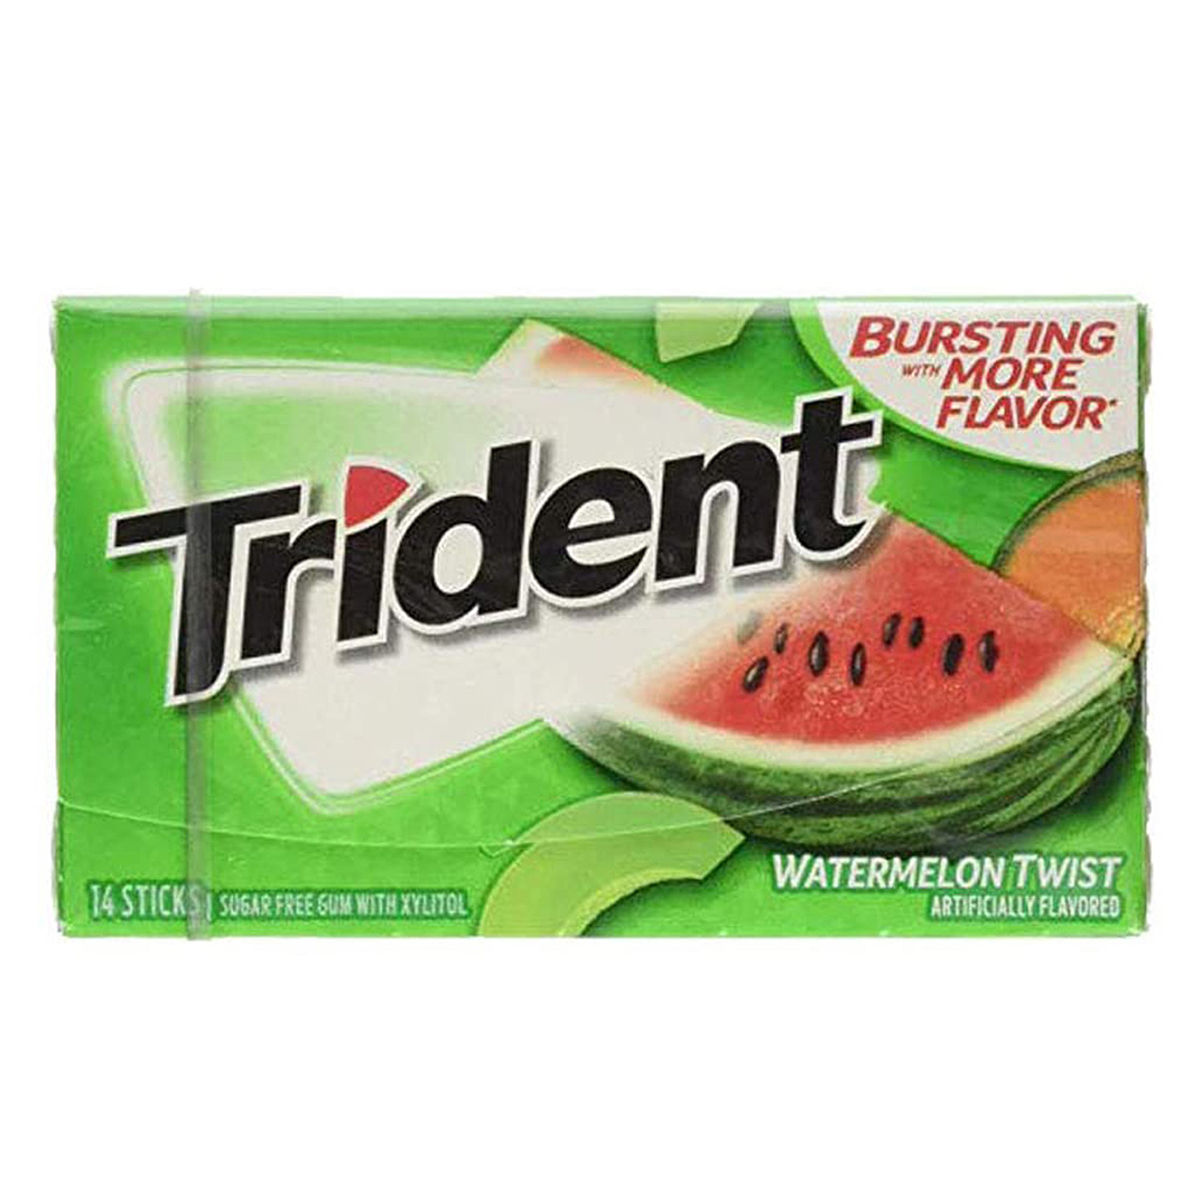 Buy Trident Sugarfree Watermelon Twist Gum, 14 Sticks Online